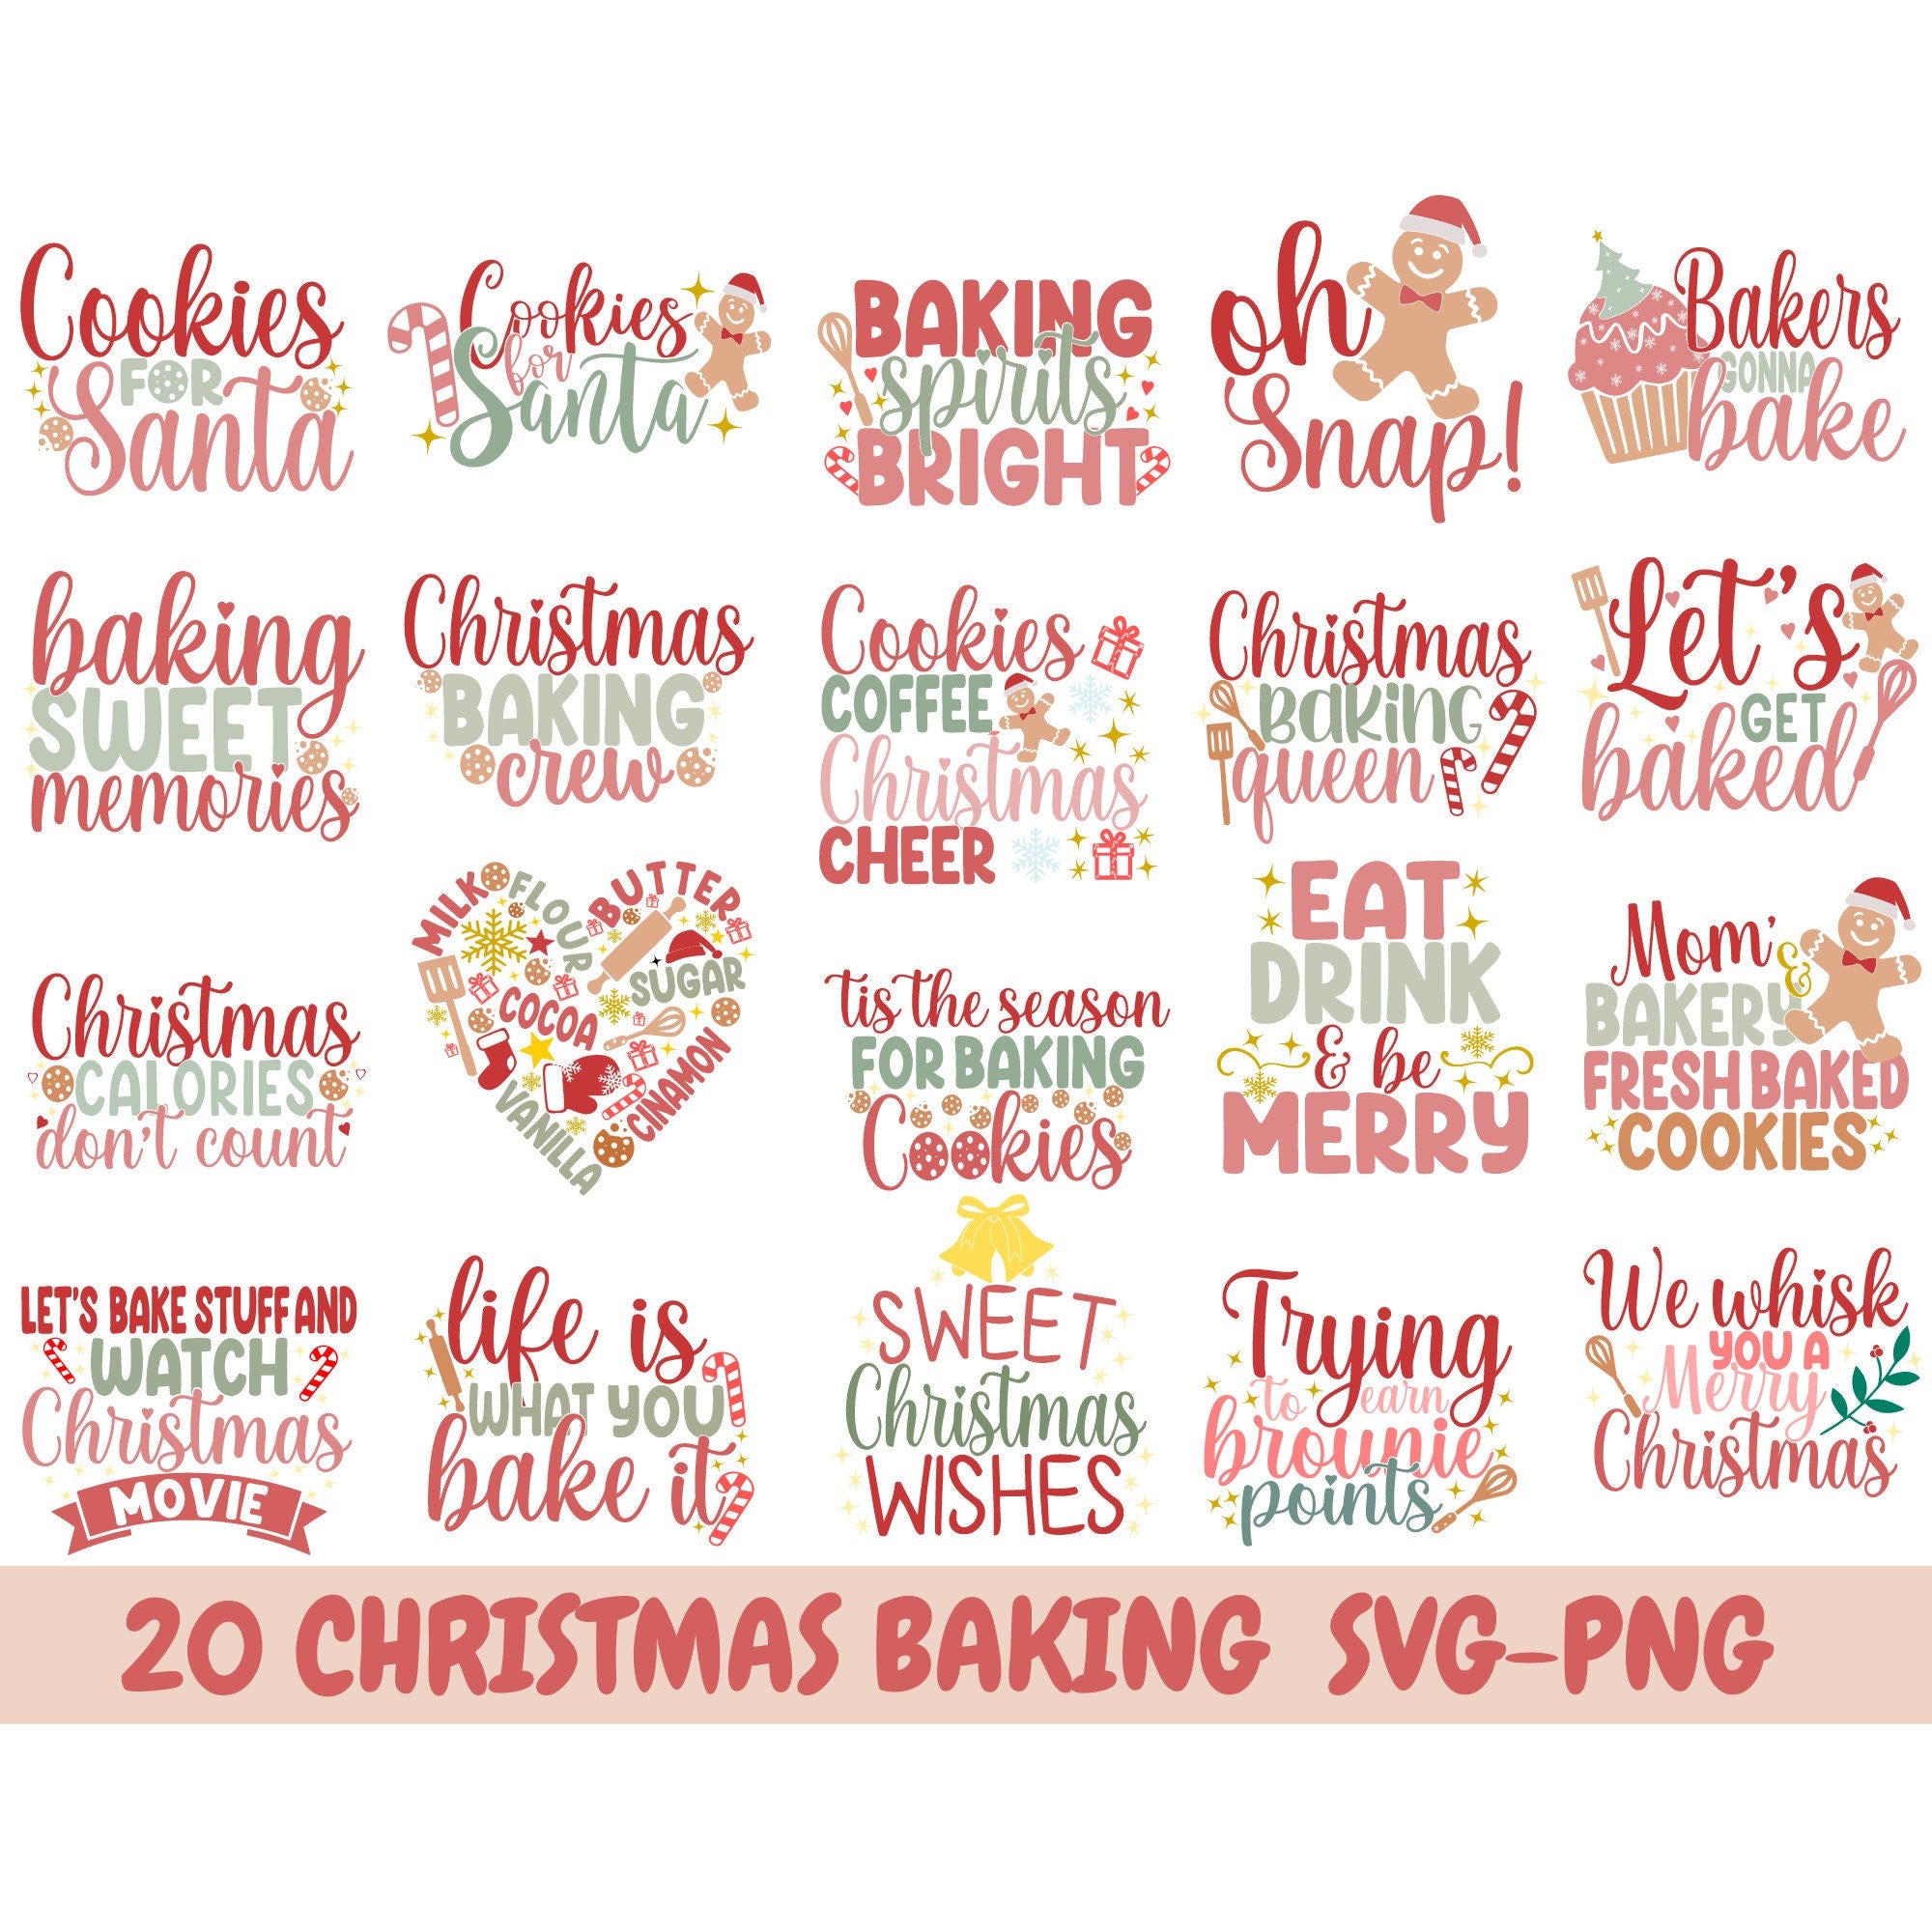 Christmas Pot Holder SVG Bundle, Potholder svg, Christmas svg, Oven Mitt SVG, Kitchen SVG, Baking Svg, Funny Kitchen Quotes, Cut File Cricut